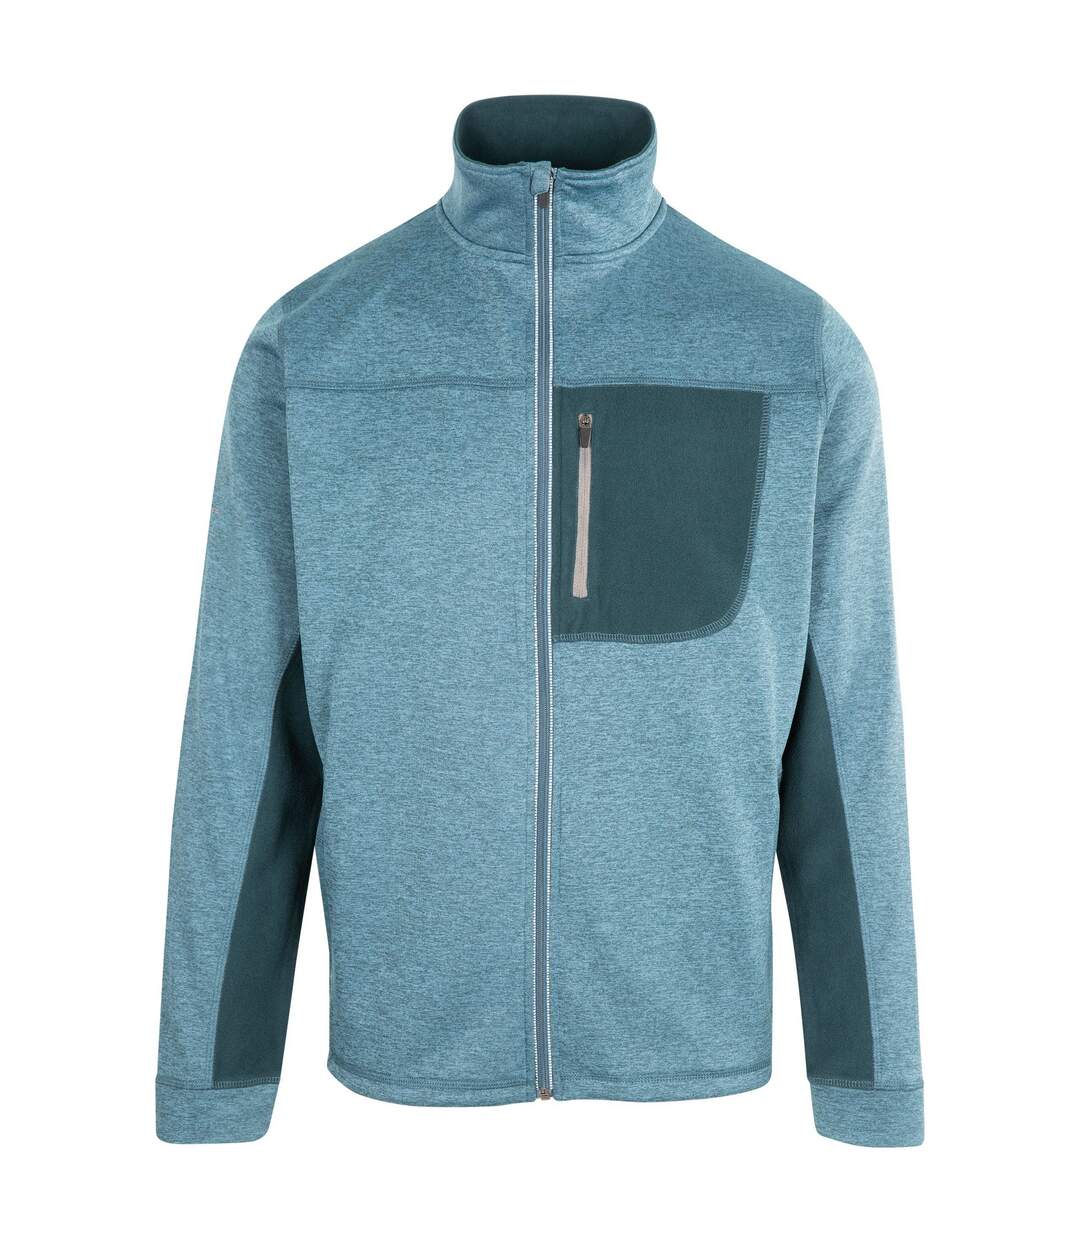 Trespass Mens Radnage Marl AT200 Fleece Jacket (Blue/Gray)